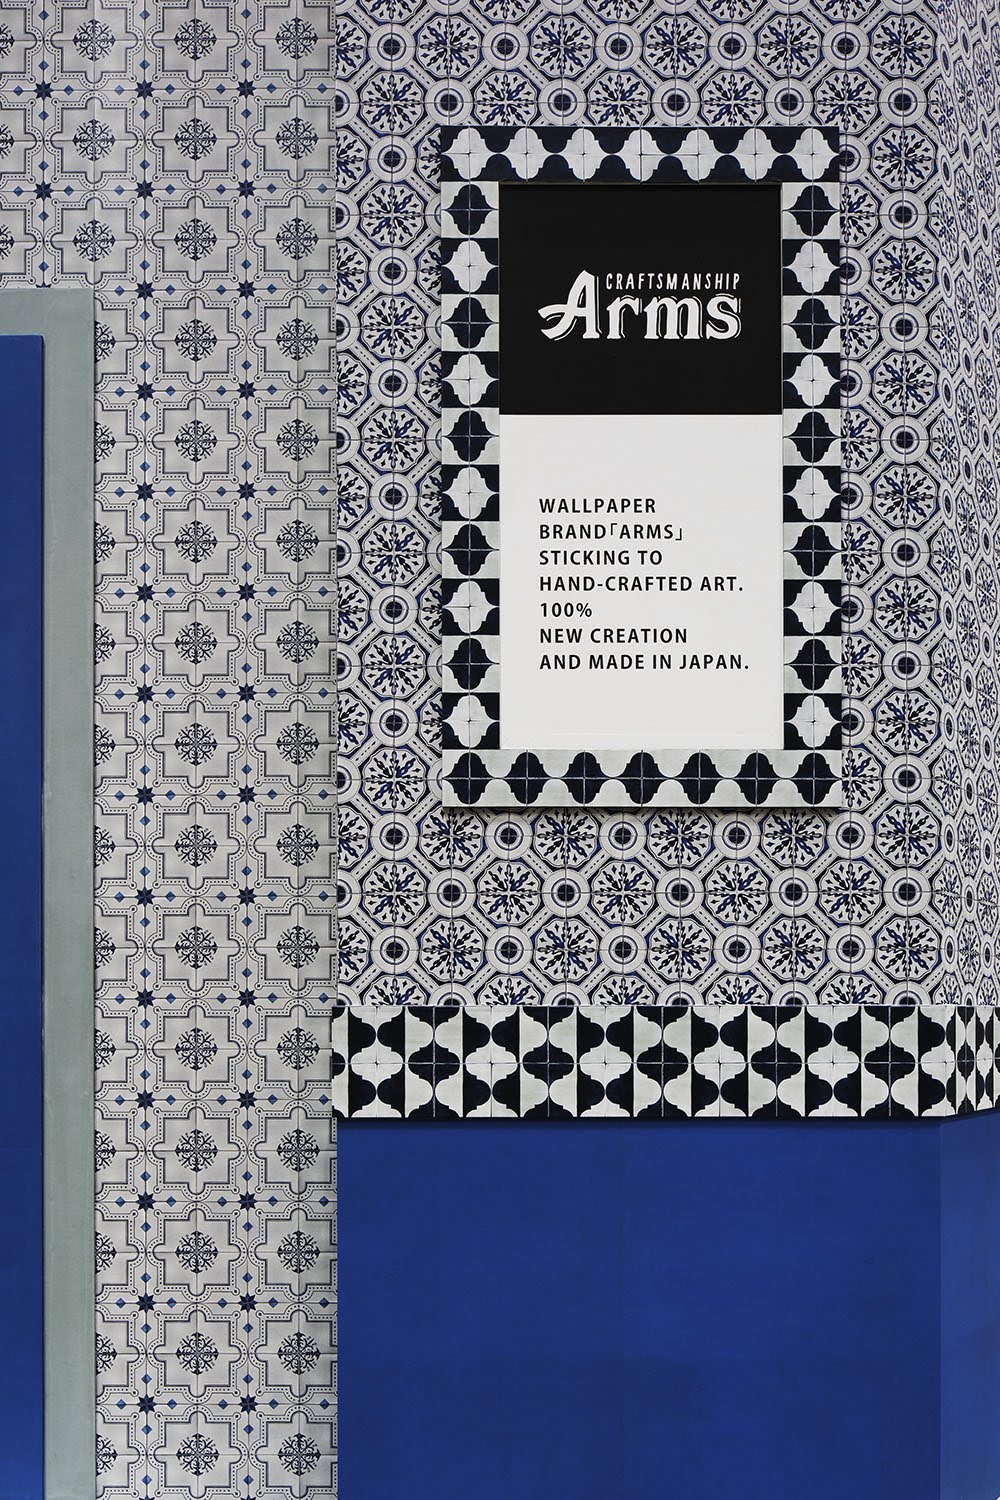 壁紙と素材の通販サイト Arms アームス スタッフブログ